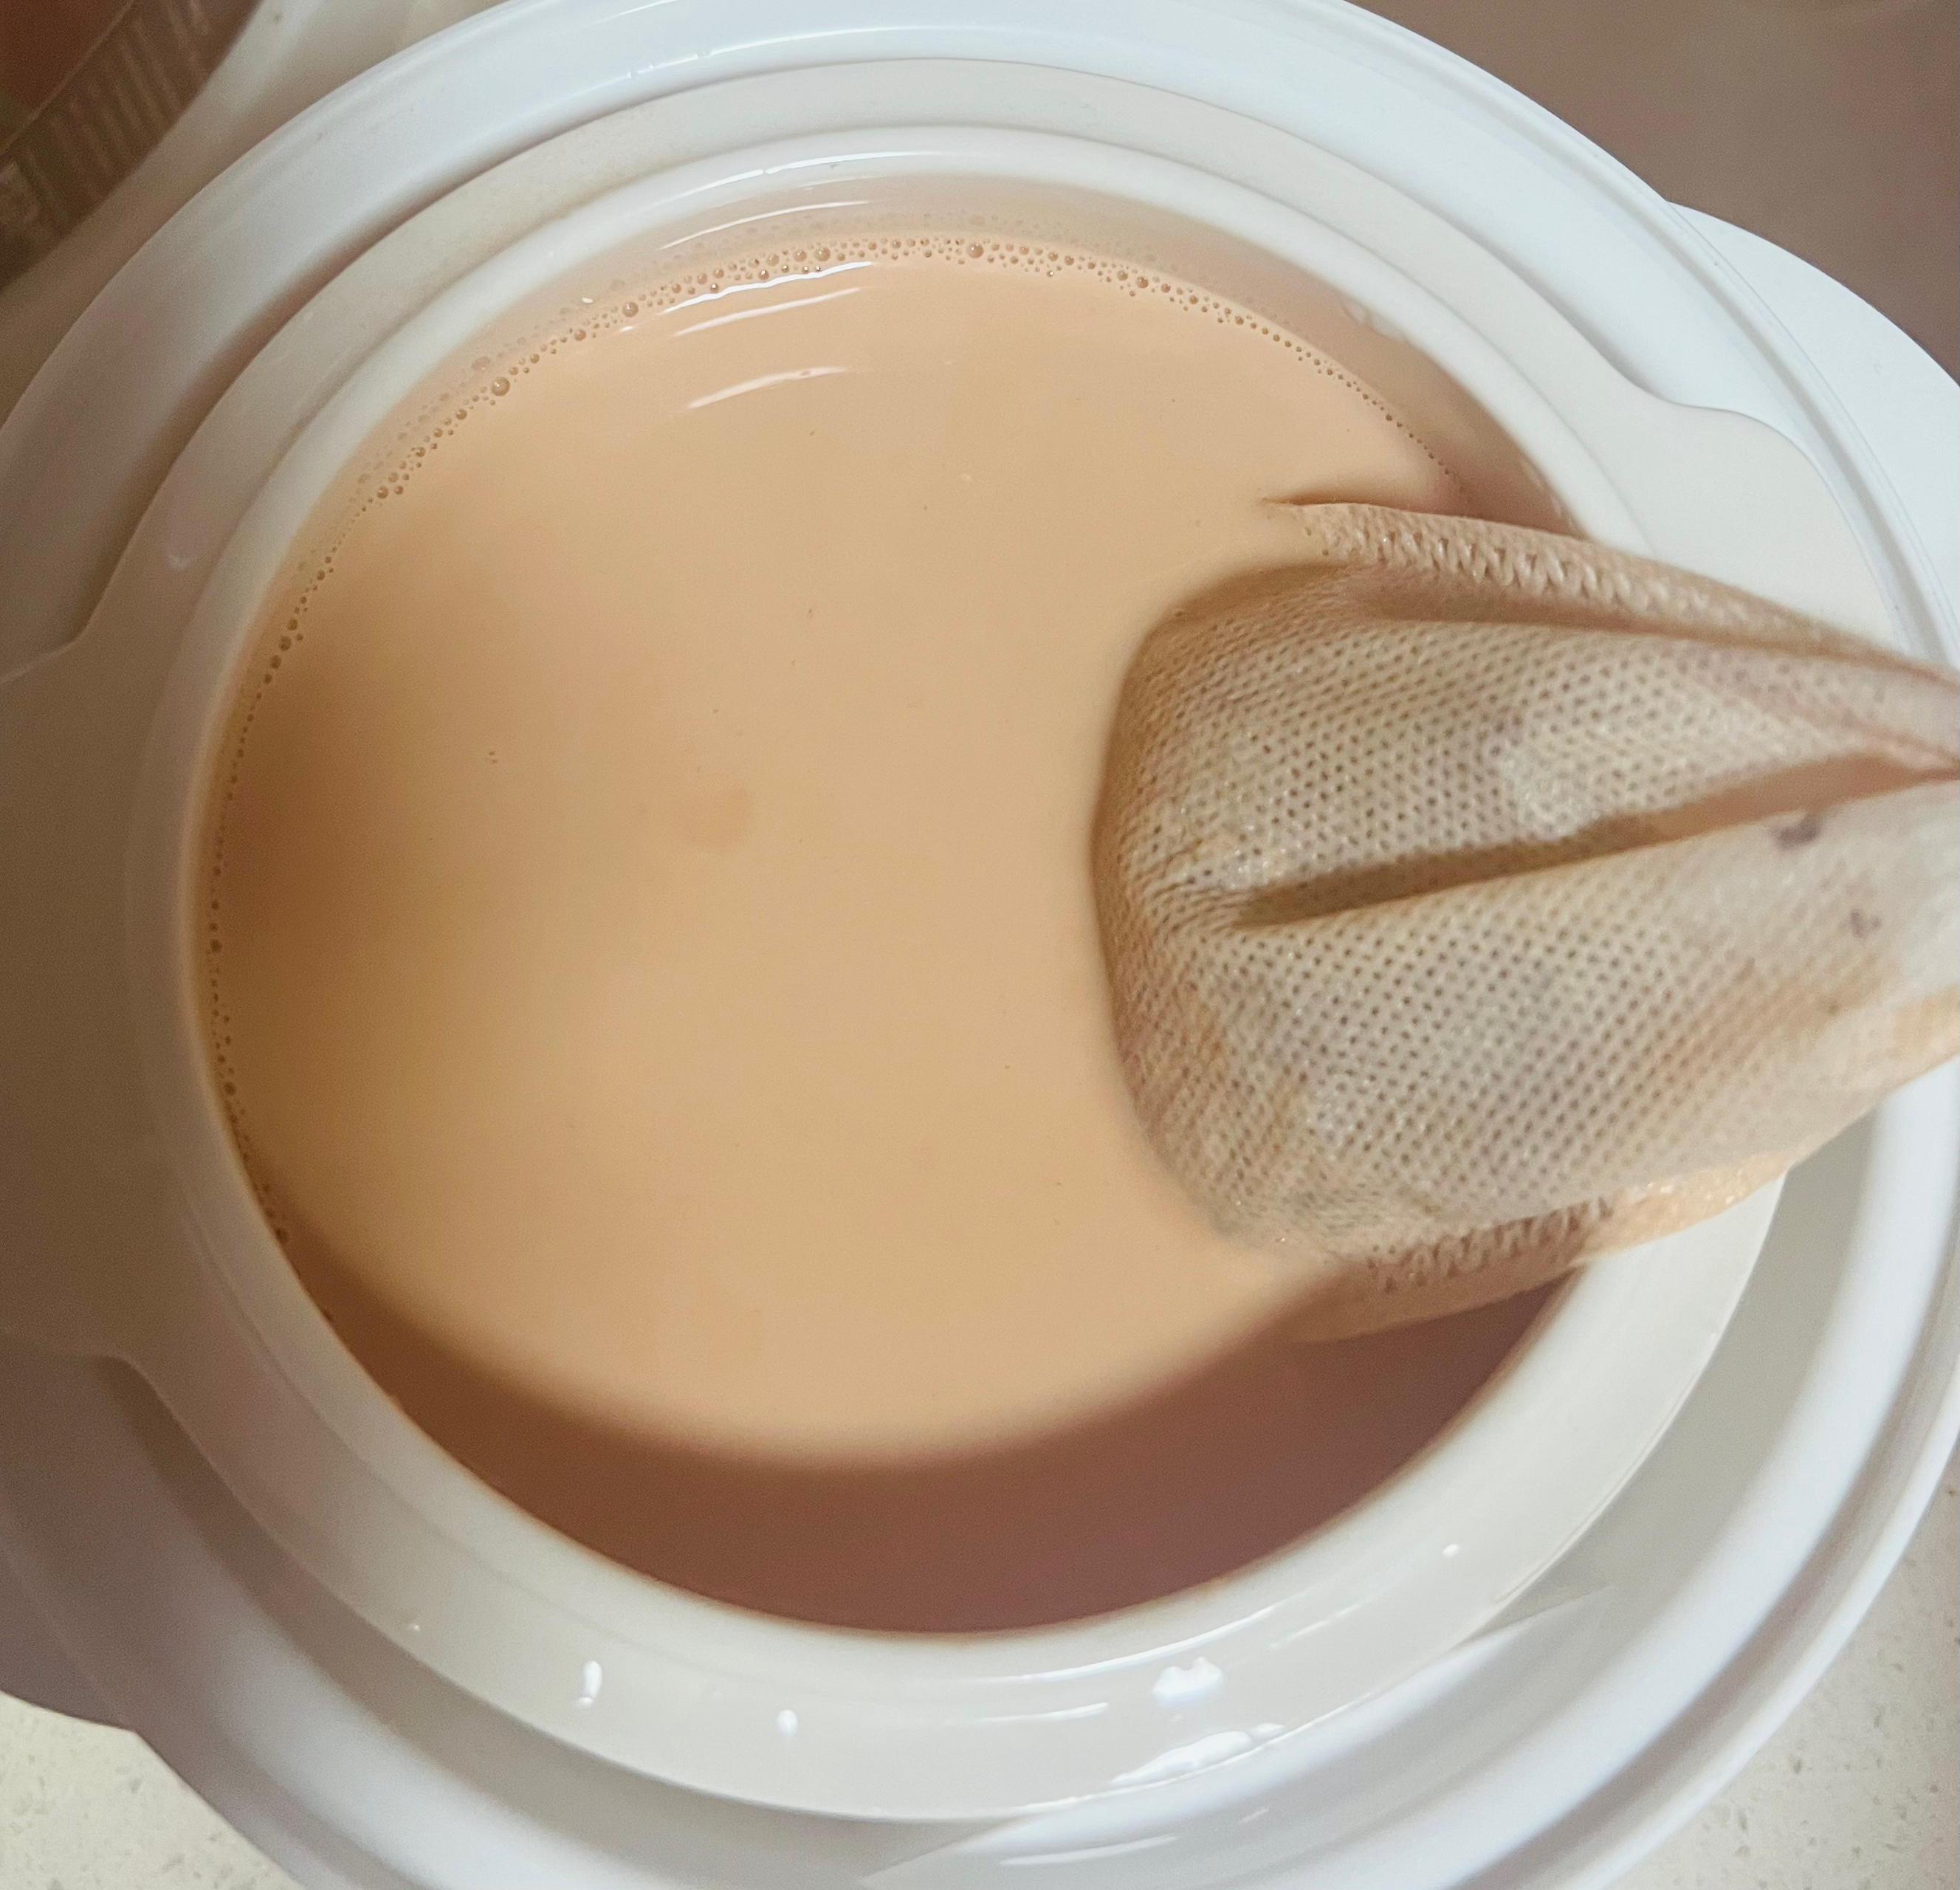 奶茶（电炖锅